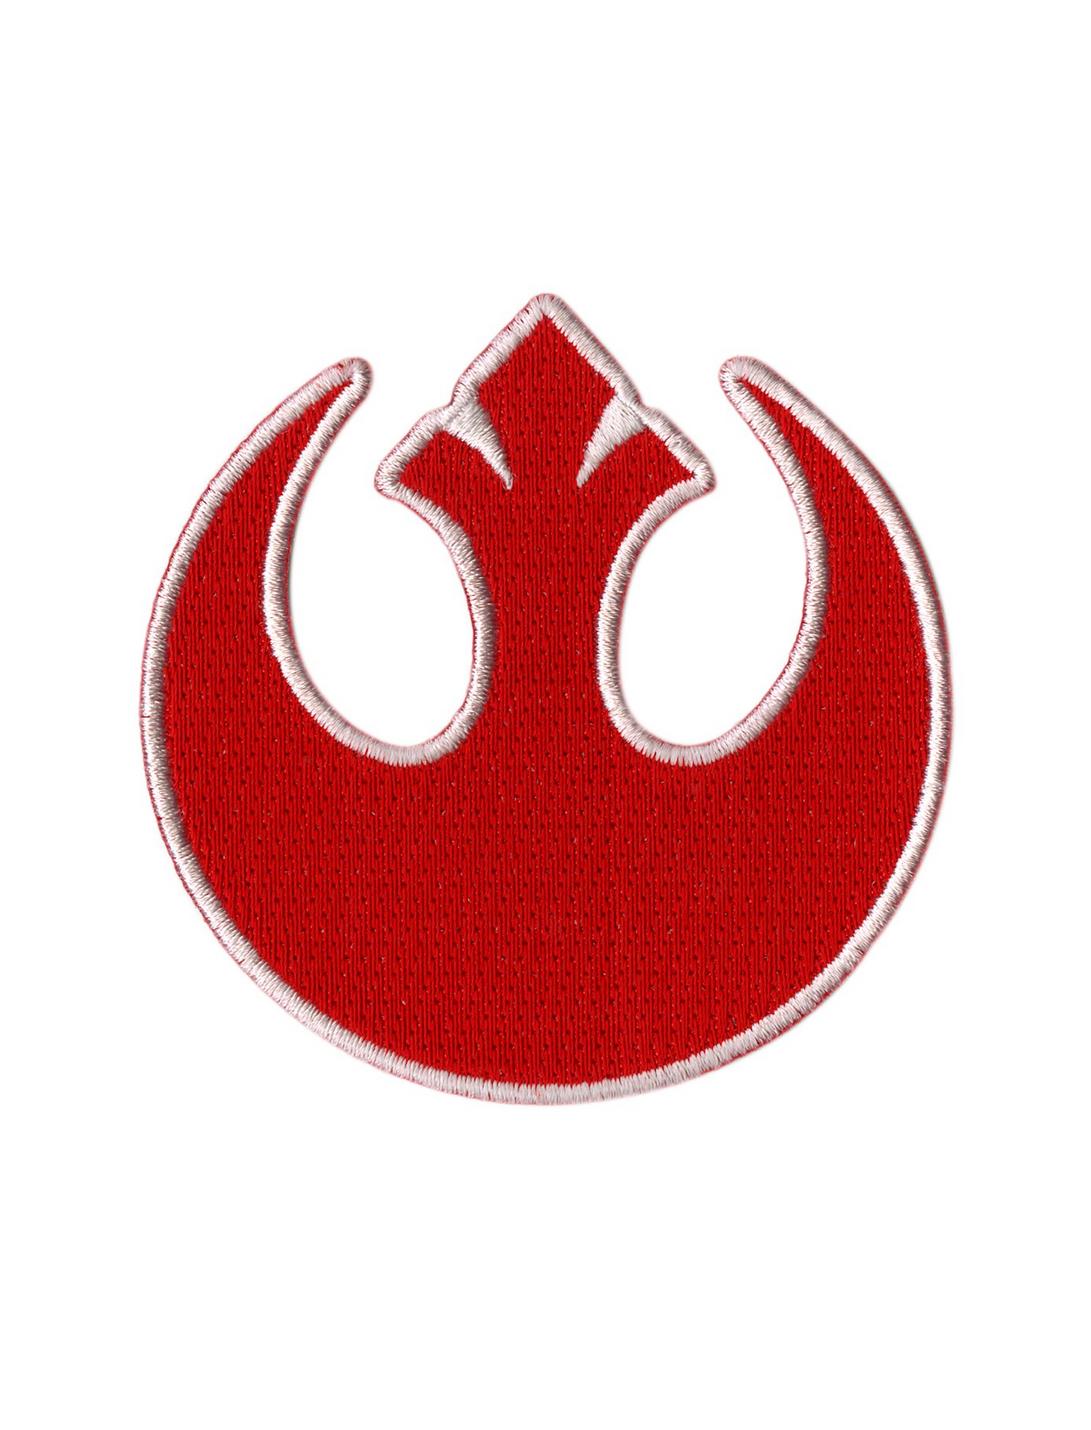 Star Wars Rebel Logo Iron-On Patch, , hi-res